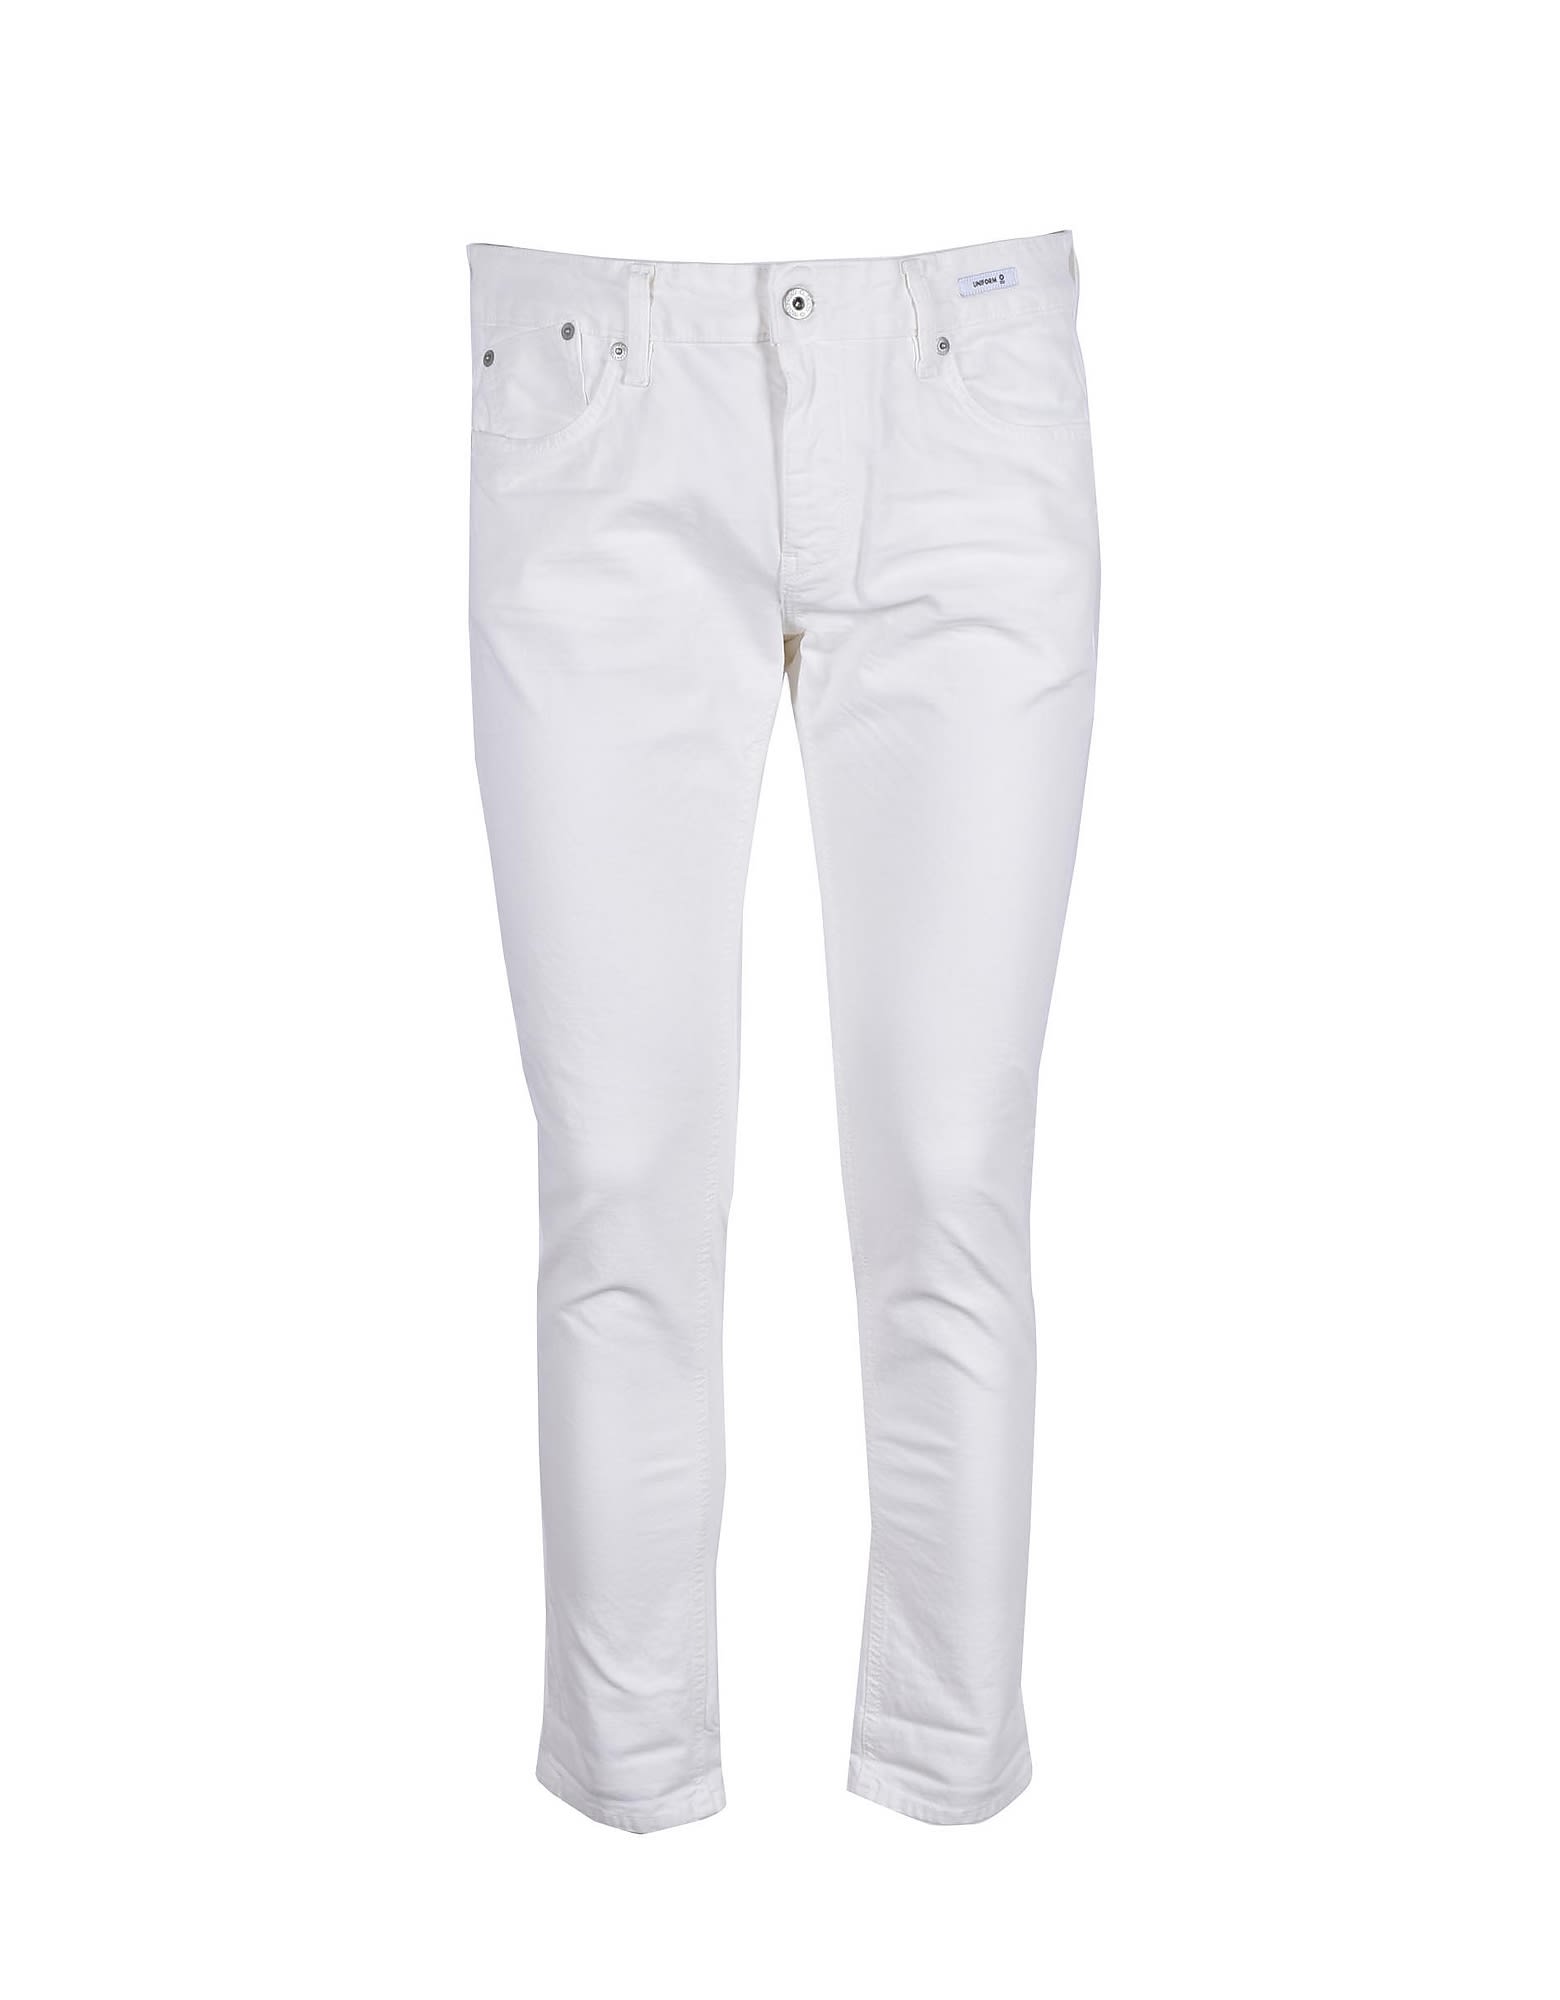 Uniform Mens White Jeans